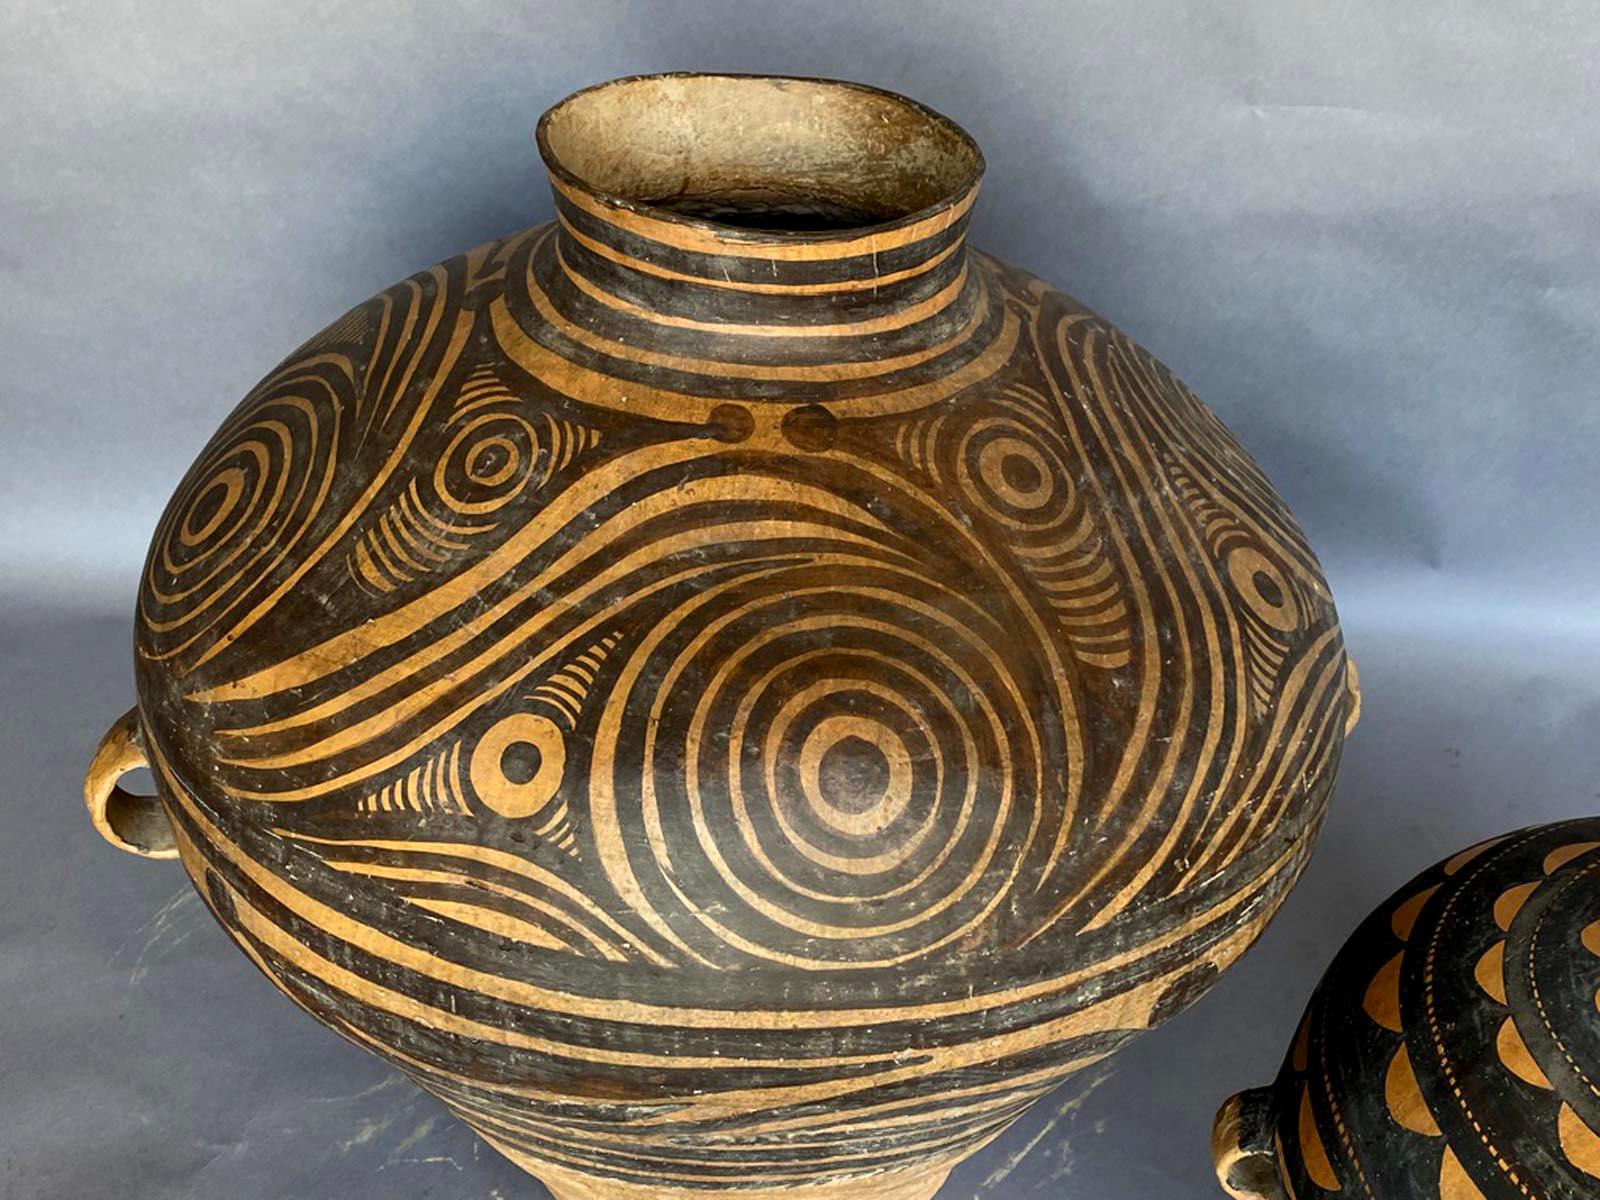 Zwei moderne chinesische Keramikgefäße im neolithischen Stil. Separat verkauft. Großer Topf hat einen kleinen Haarriss am Boden, der repariert wurde. siehe Detailfotos
Links misst 32 T x 29 H und der Listenpreis beträgt $3.250
Rechts misst 22 T x